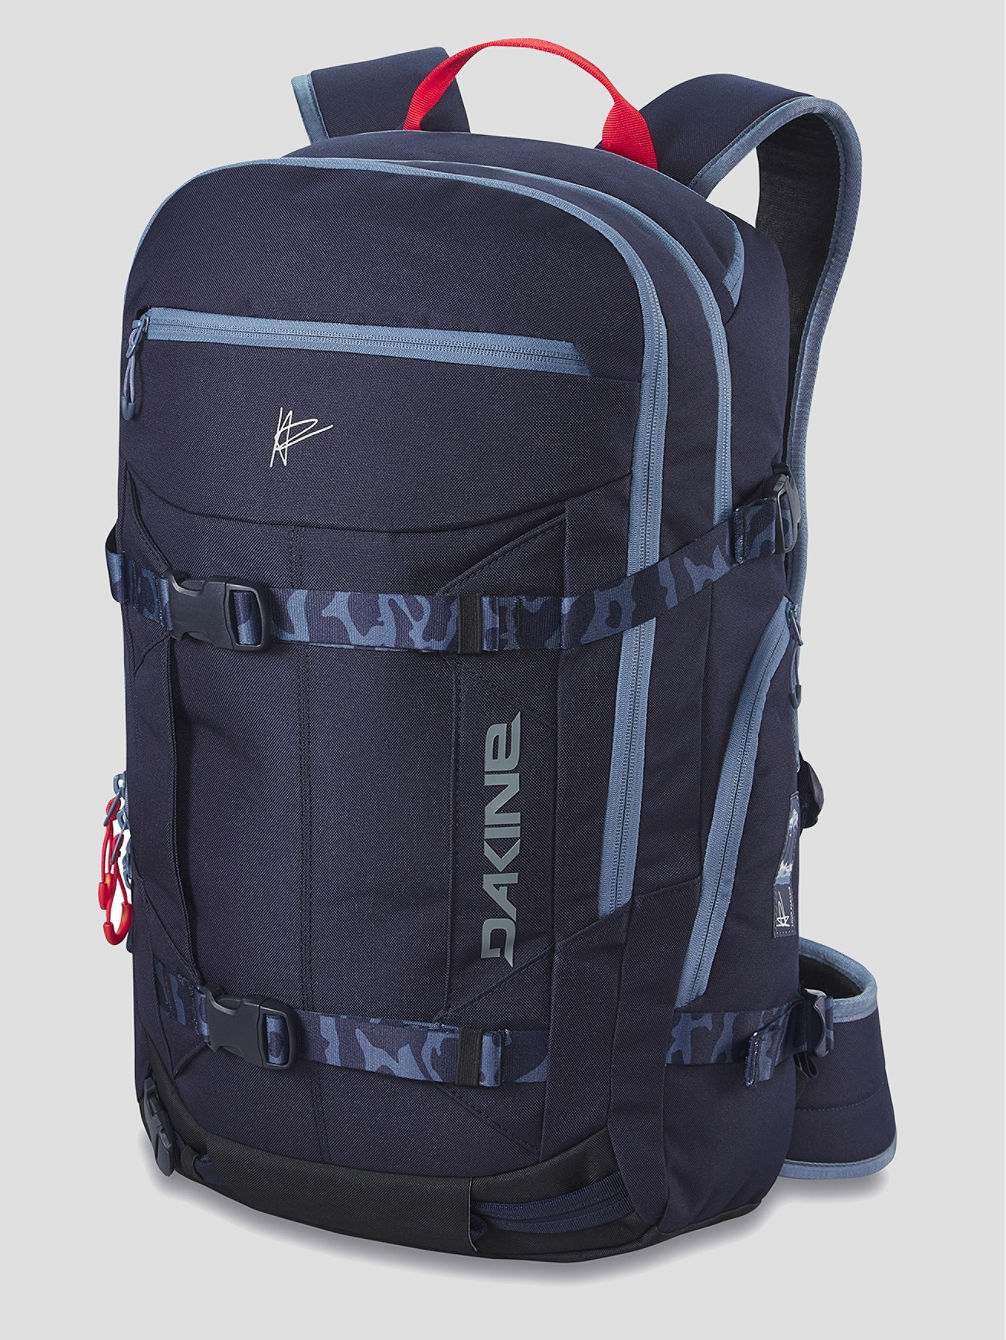 Team Mission Pro 32L Backpack